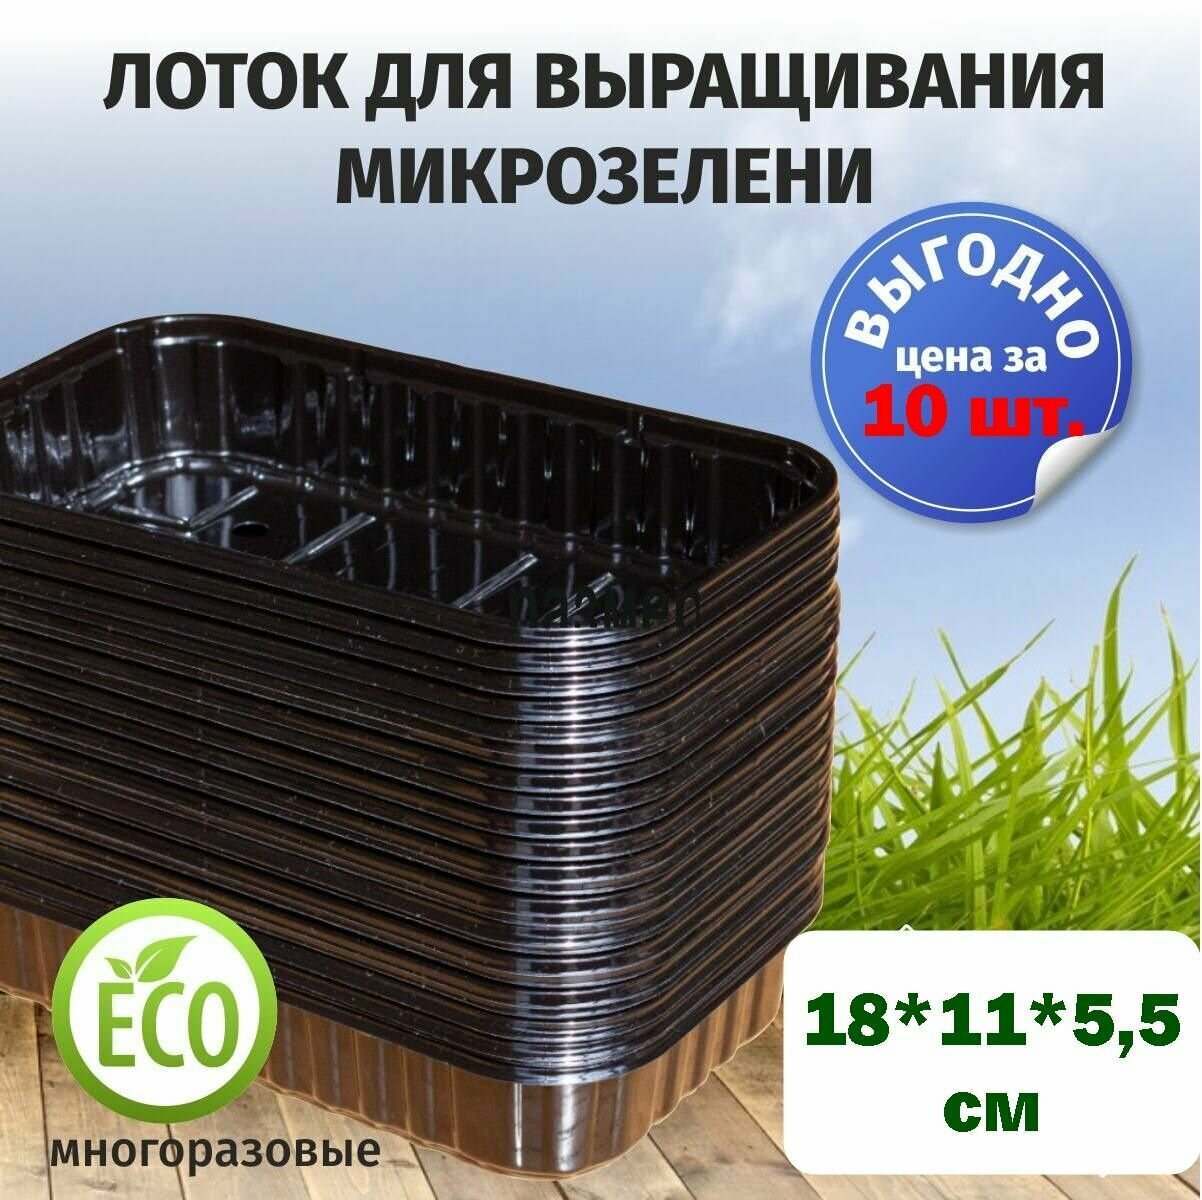 Лотки для выращивания свежей микрозелени черного цвета / 180*110*55 / 10 штук, пластиковые контейнеры для проращивания рассады микрозелени